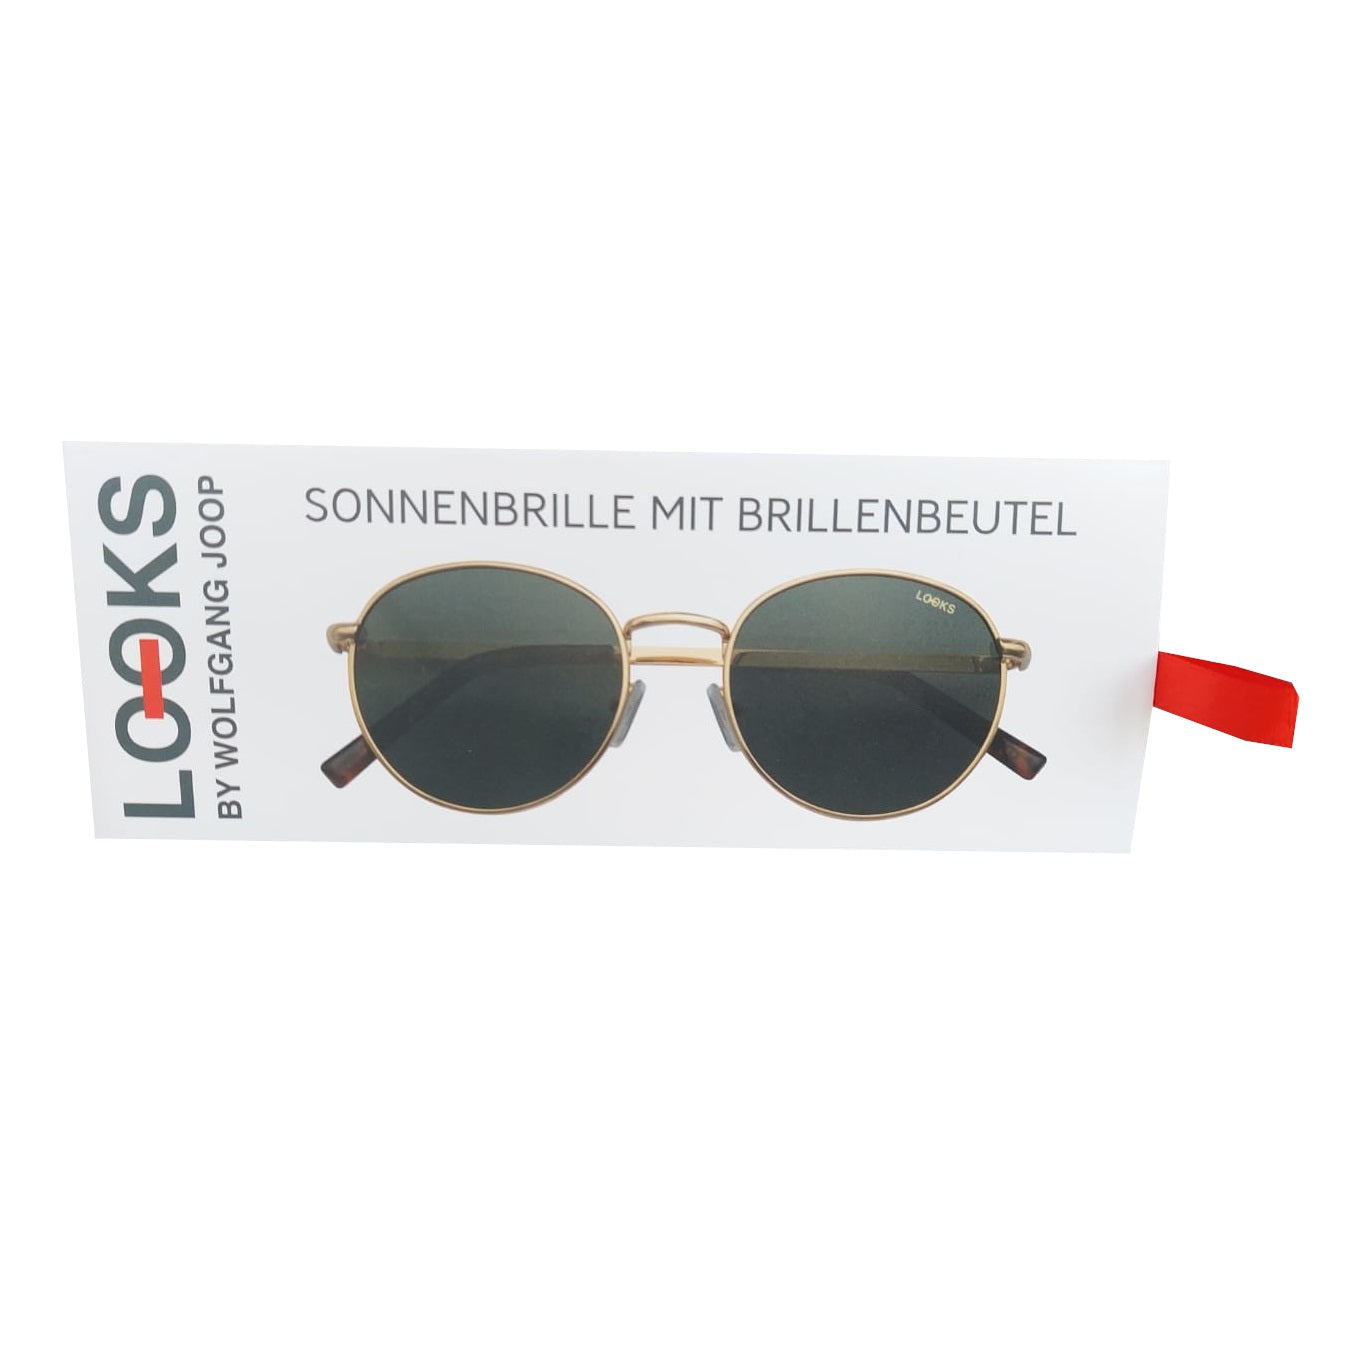 Sonnenbrille mit Brillenbeutel Unisex Rosegold Rund LOOKS by Wolfgang Joop